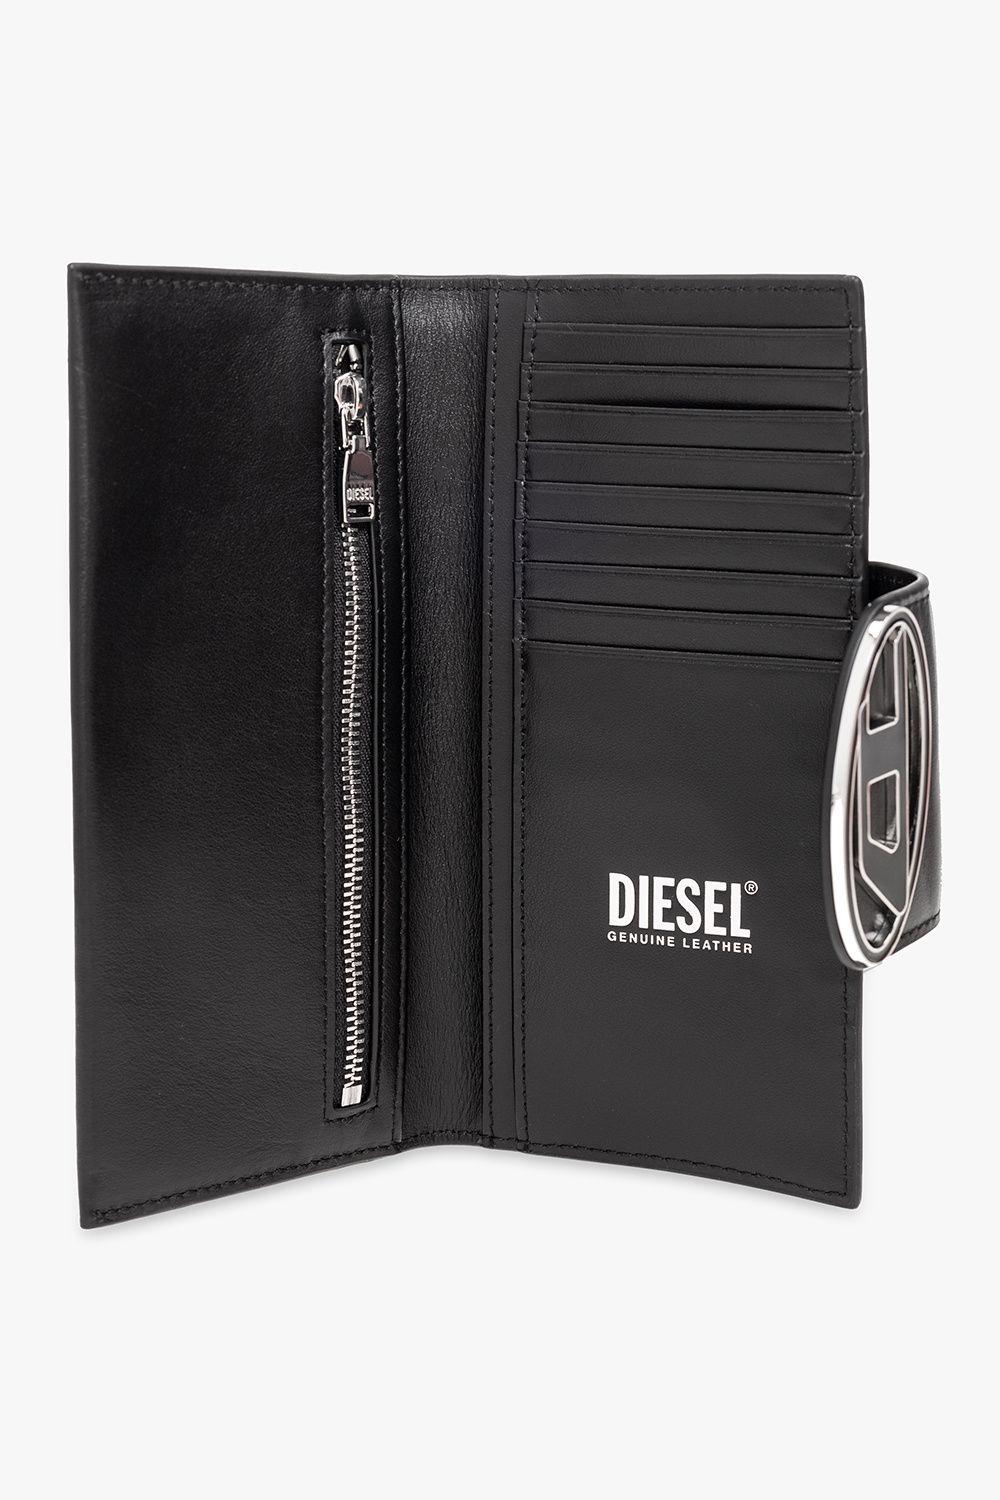 DIESEL 'julie' Leather Wallet in Black | Lyst